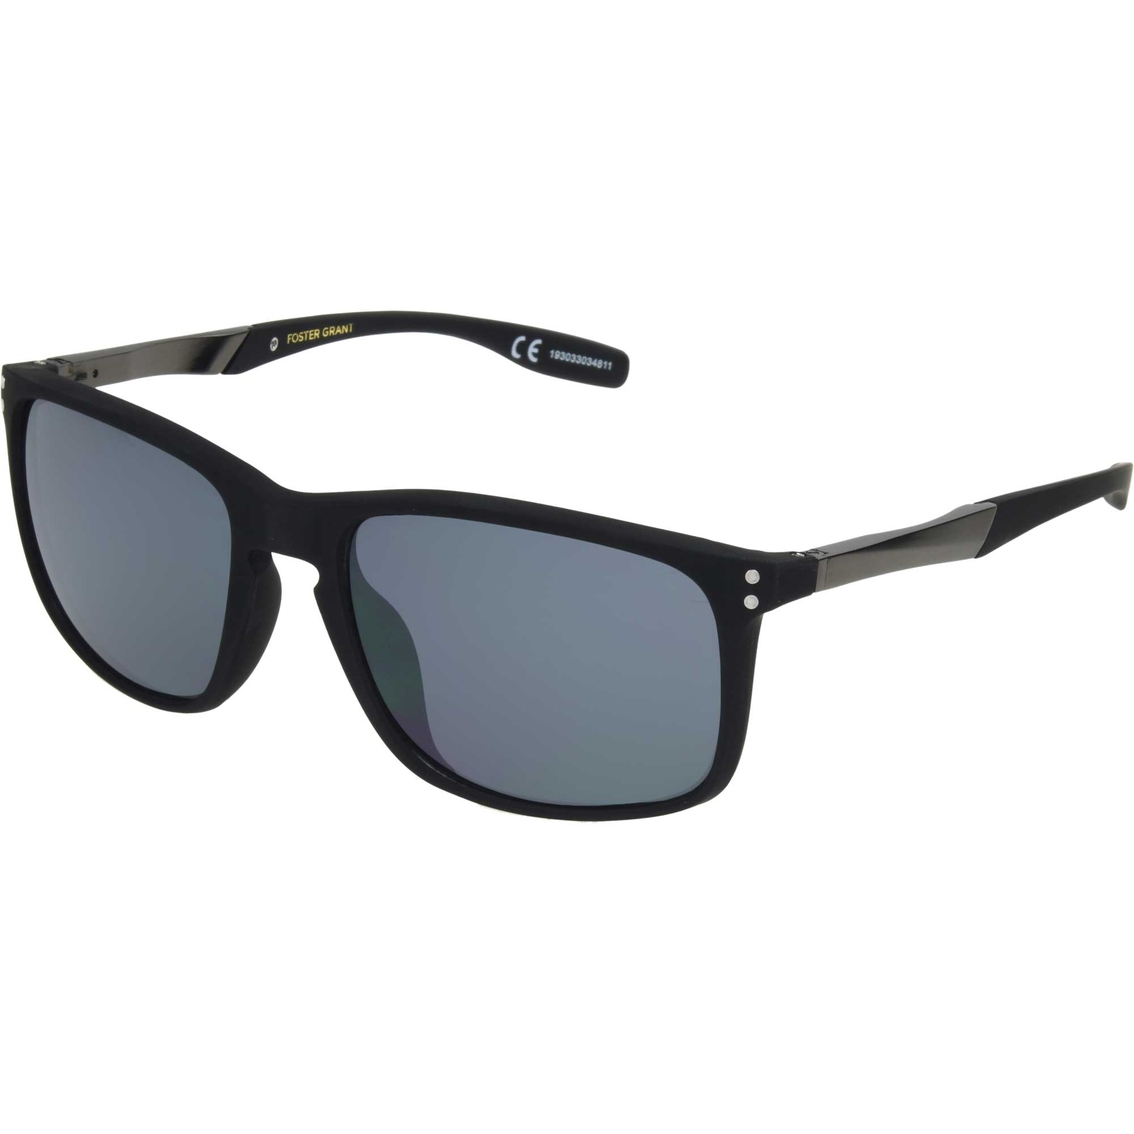 Foster Grant Polar Black Wrap Sunglasses 10250232.cgr | Unisex ...